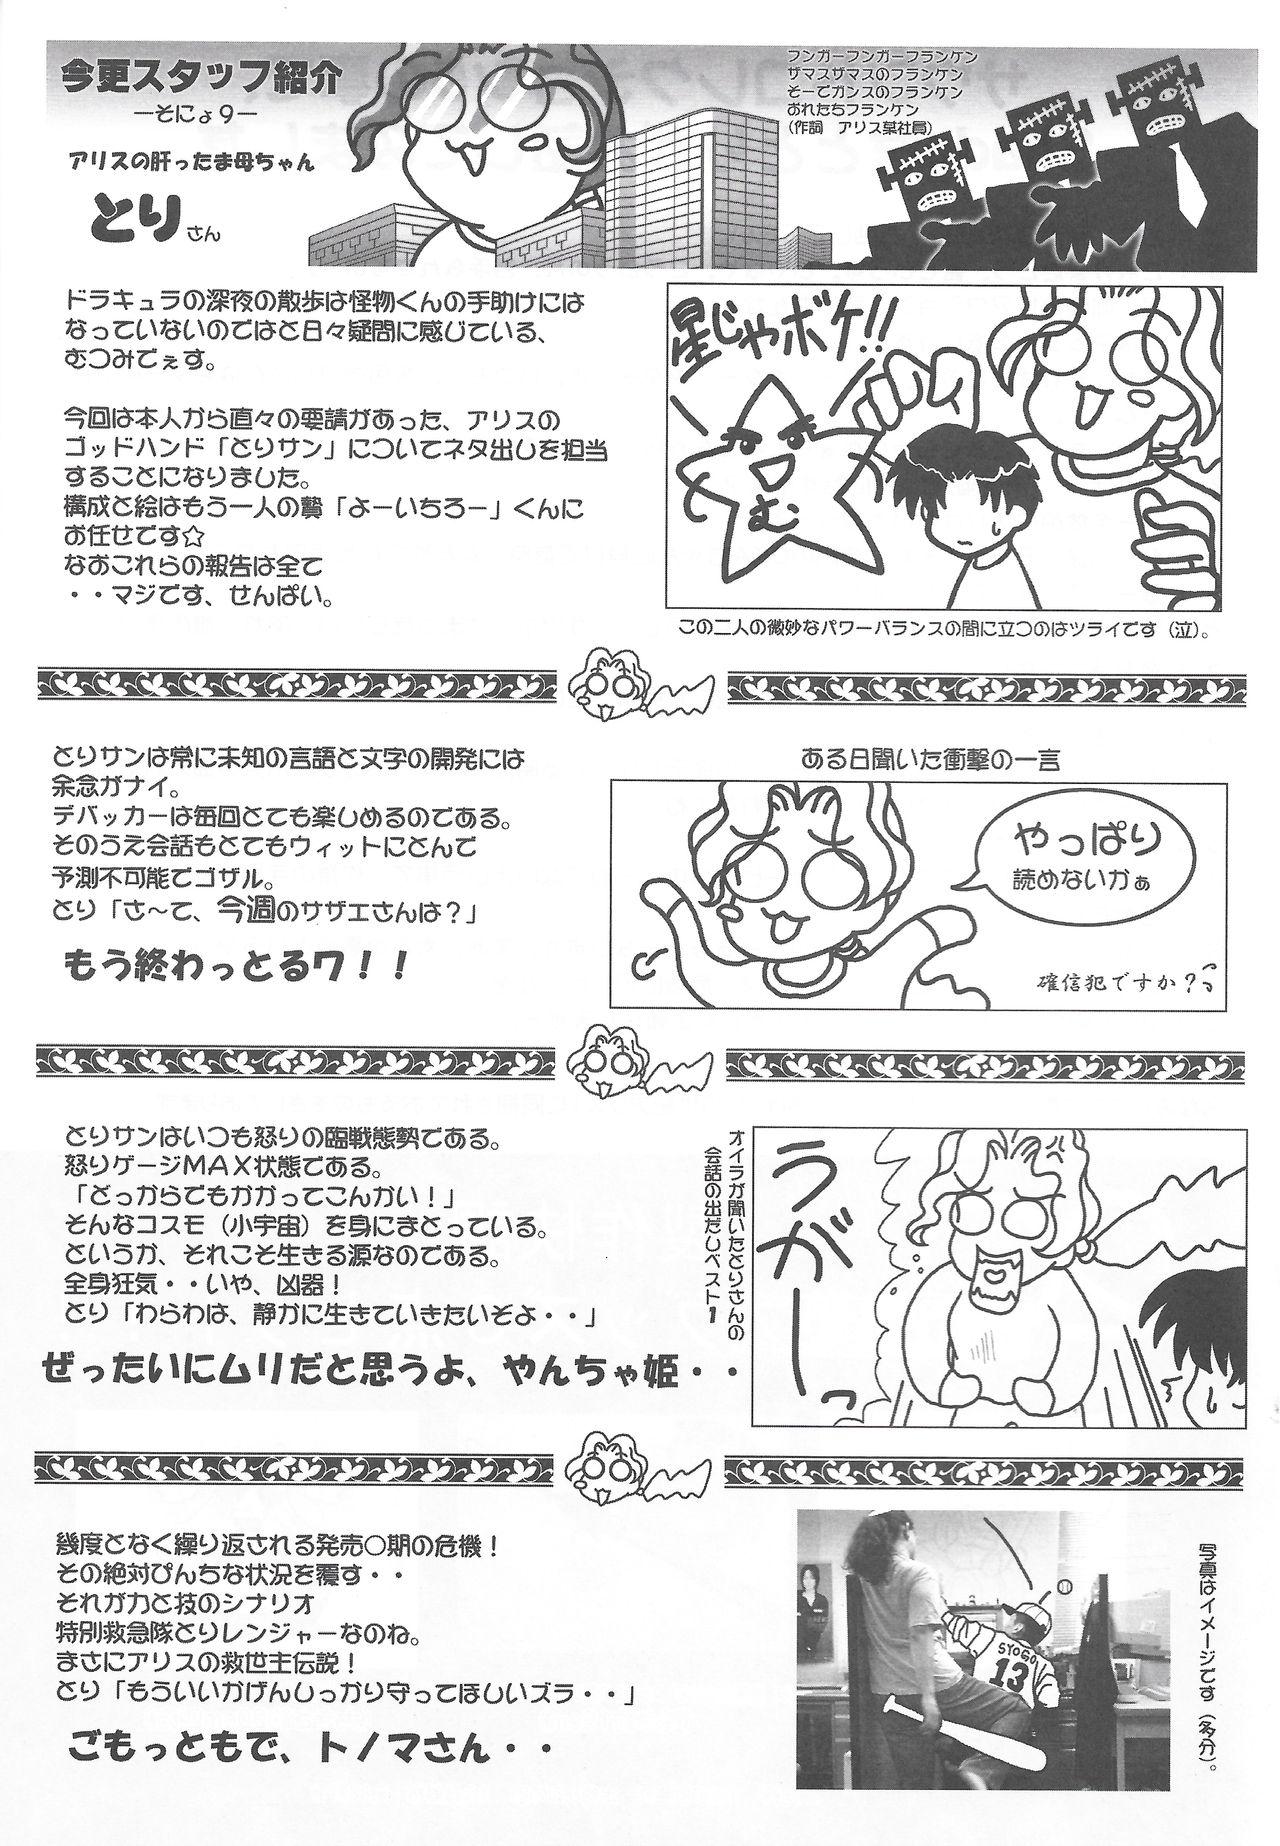 Cheating Arisu no Denchi Bakudan Vol. 14 Tanga - Page 8